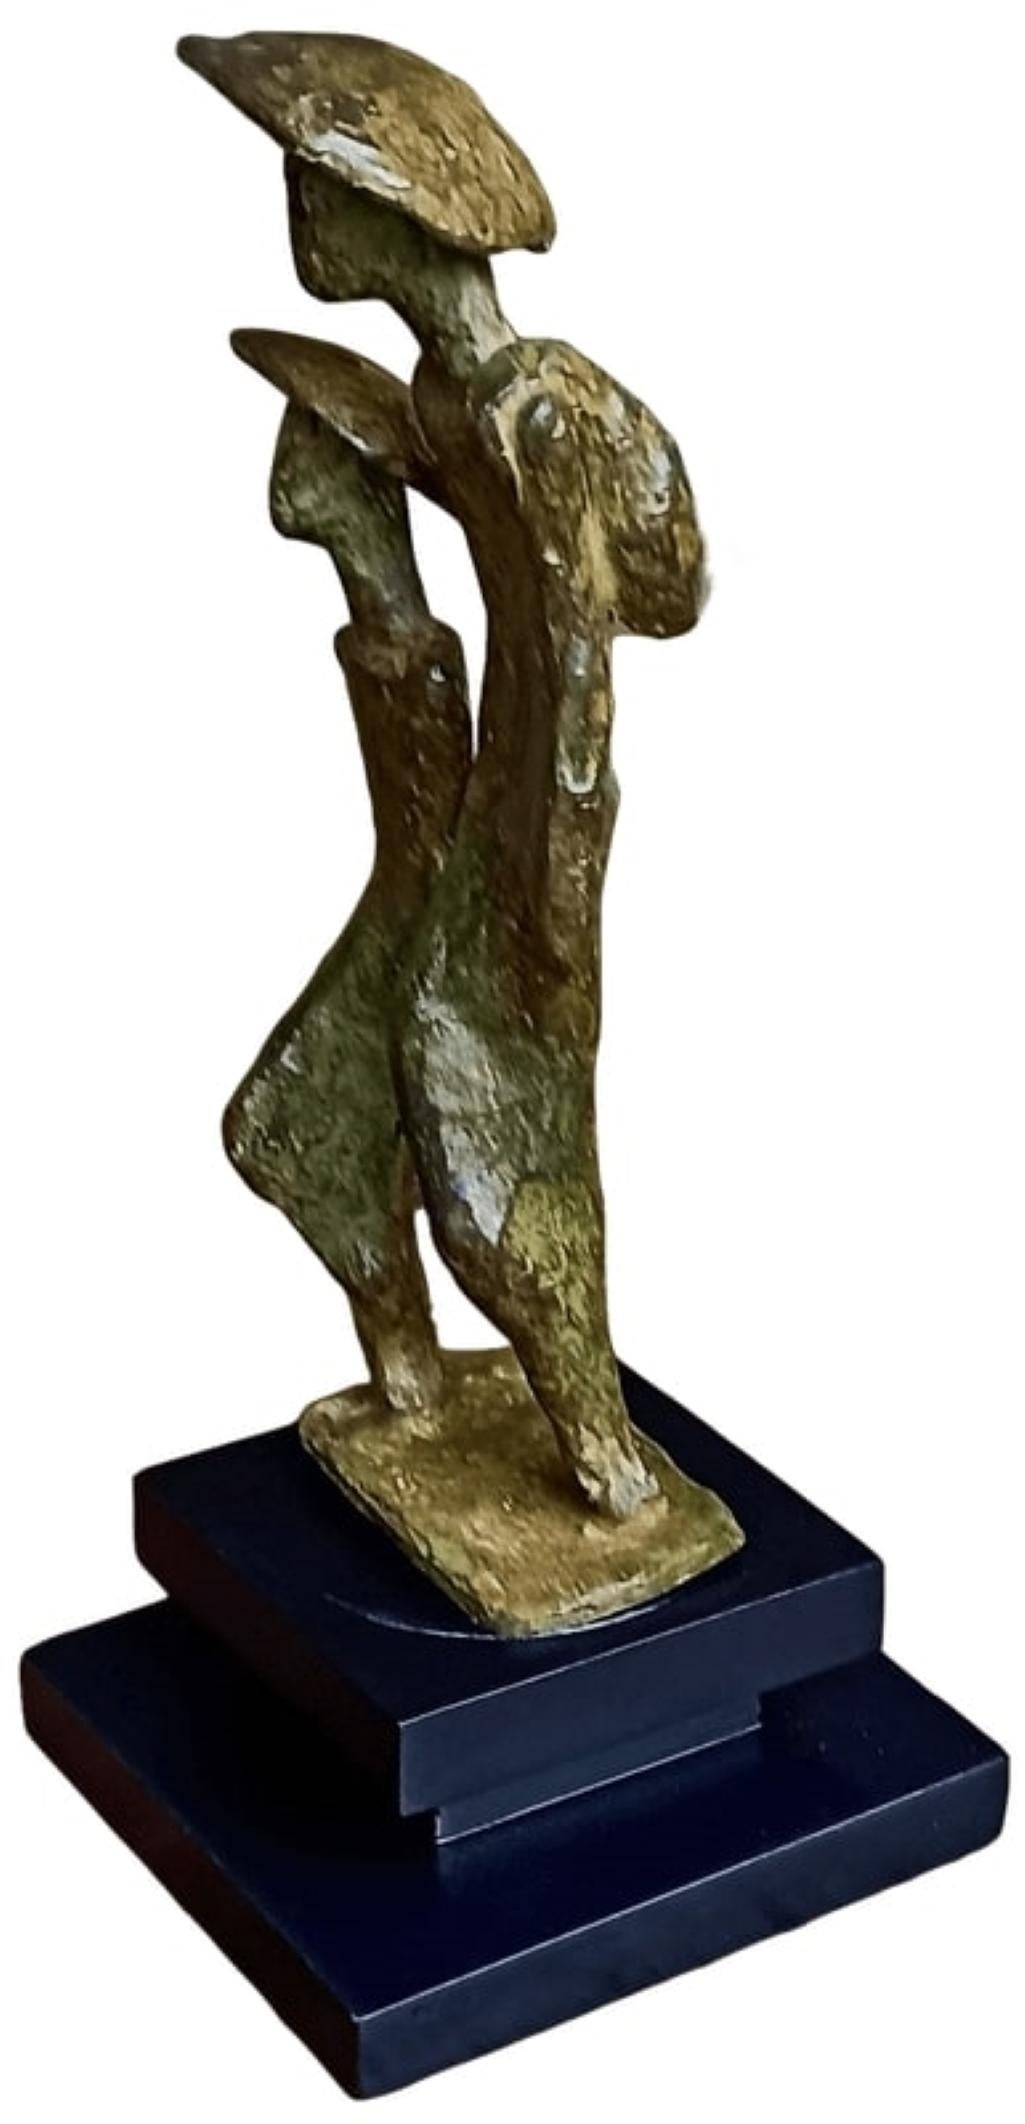 Tushar Kanti Das Roy - Sans titre
H 7.75 x L 2.5 x P 2.25 pouces (sans support)
H 9.5 x L 4 x P 4 pouces (avec support)
Sculpture en bronze

À propos de l'artiste et de son travail :
Né : 1968.
Éducation : Il a terminé ses études à l'I.C.Art & Craft